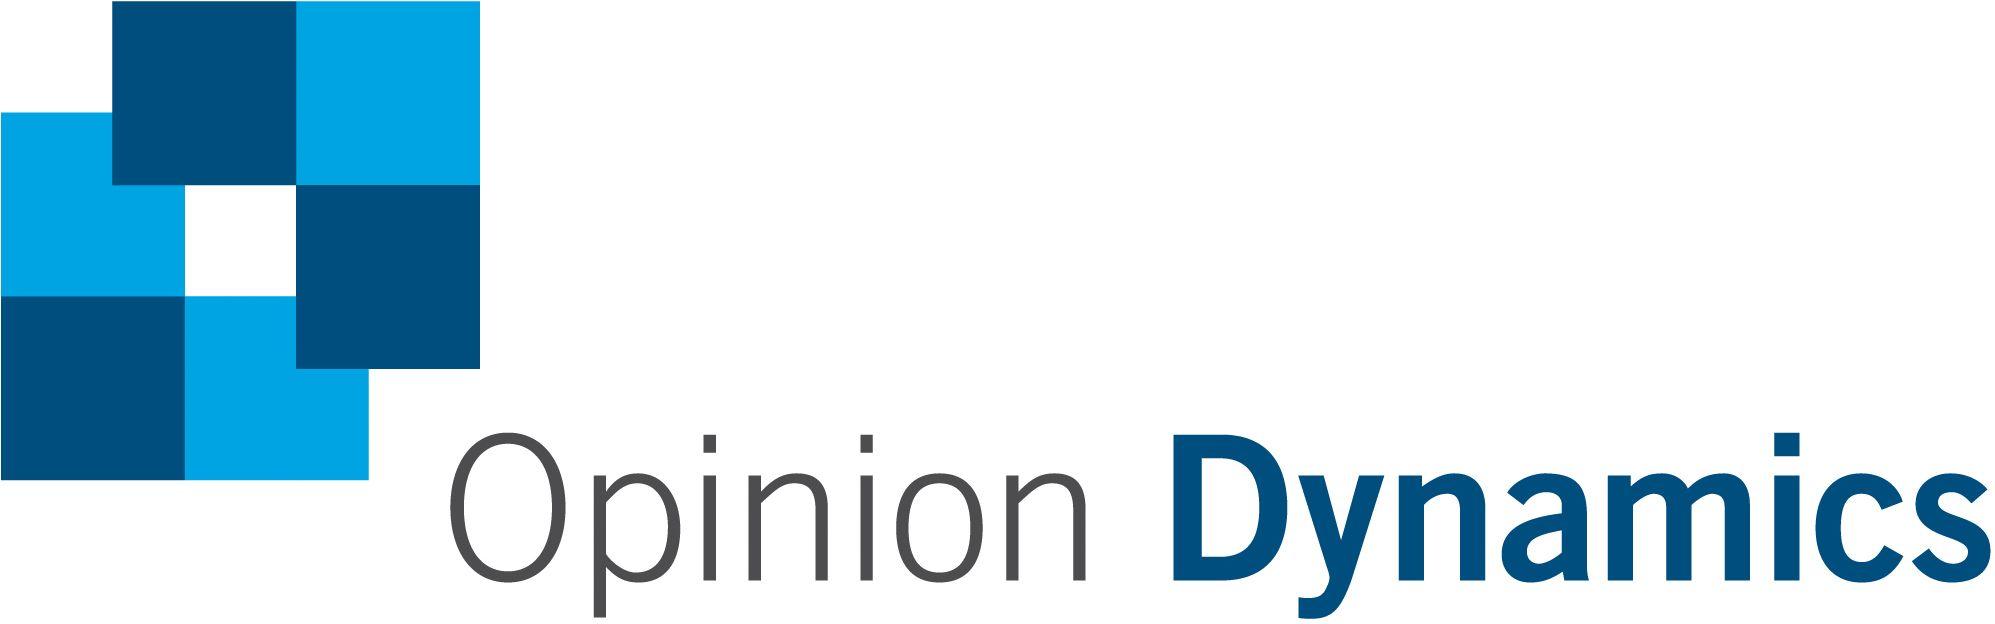 Dynamics Logo - Home - Opinion DynamicsOpinion Dynamics